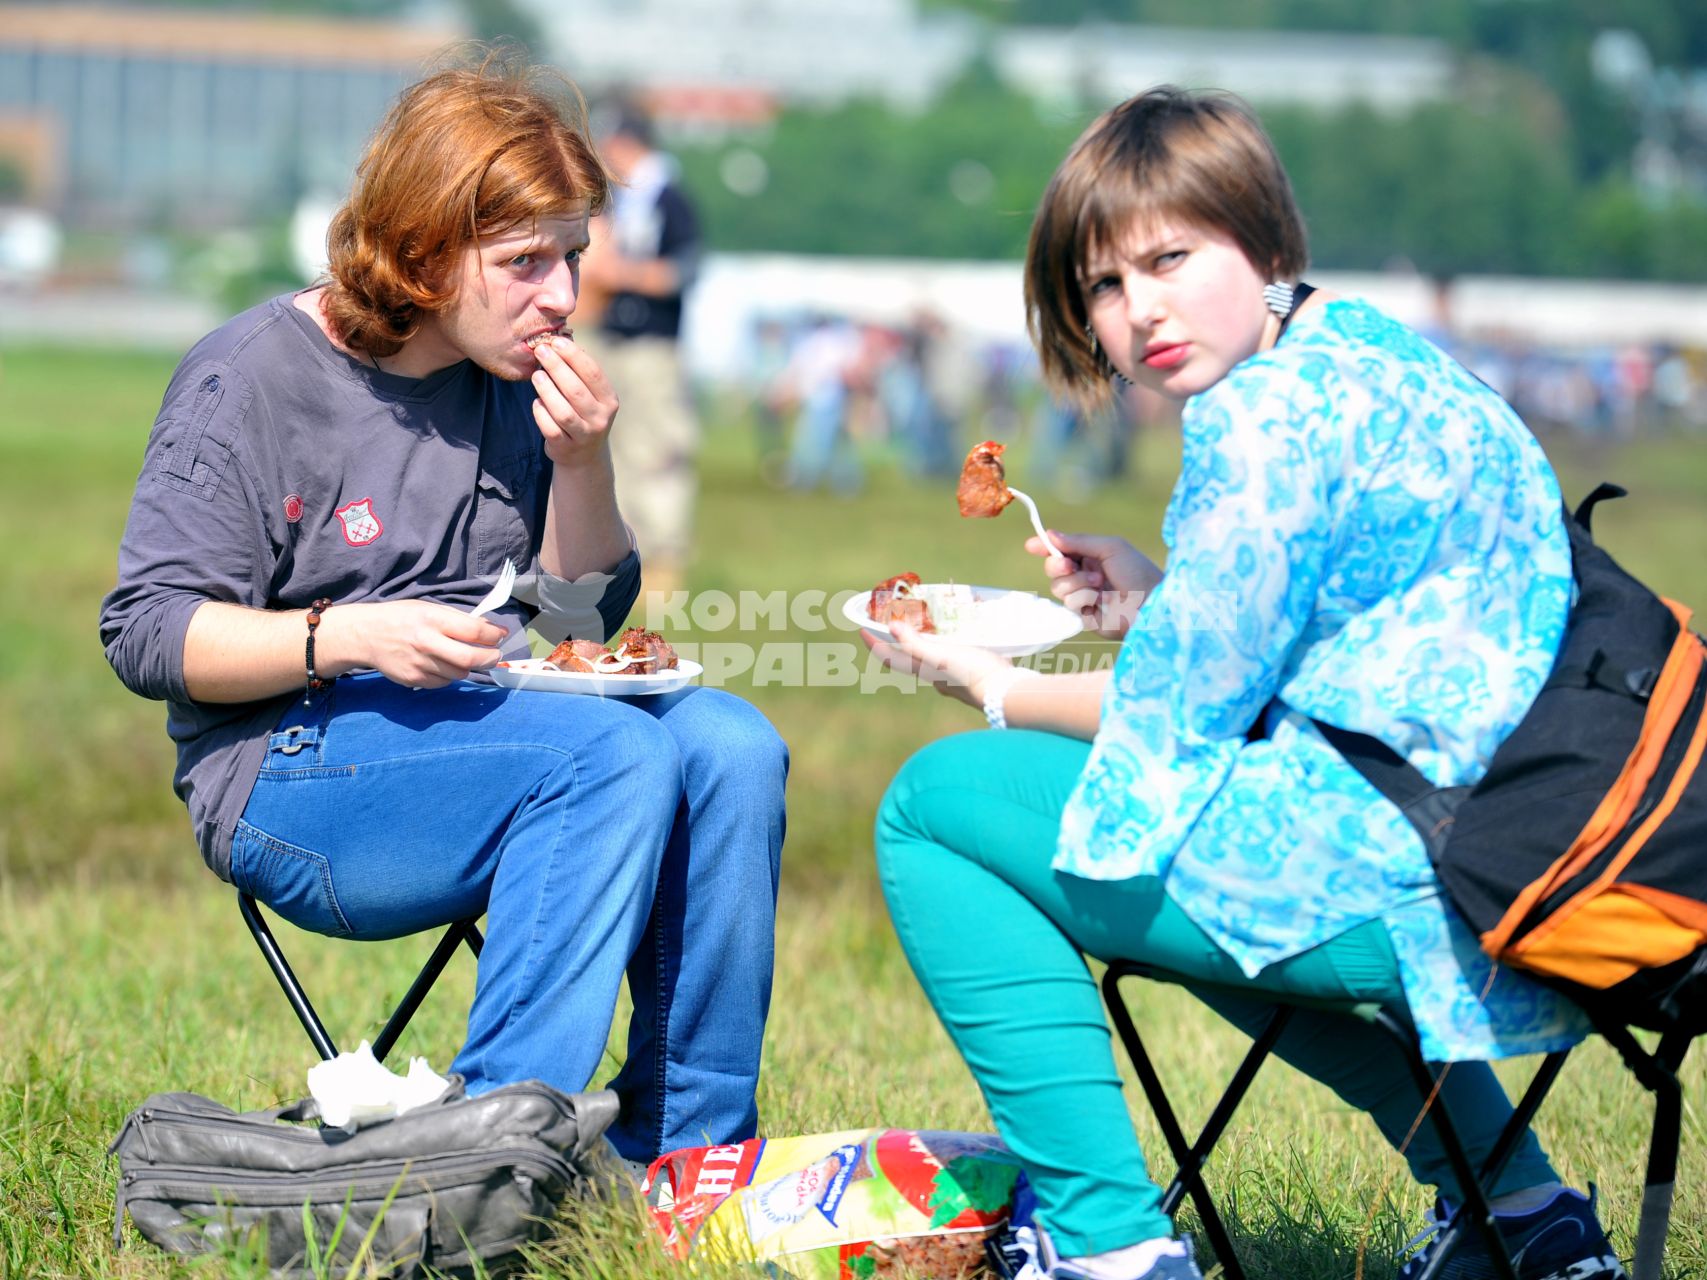 Аэродром `Тушино`. 15-й международный музыкальный фестиваль `Maxidrom`. Люди едят шашлык на траве.